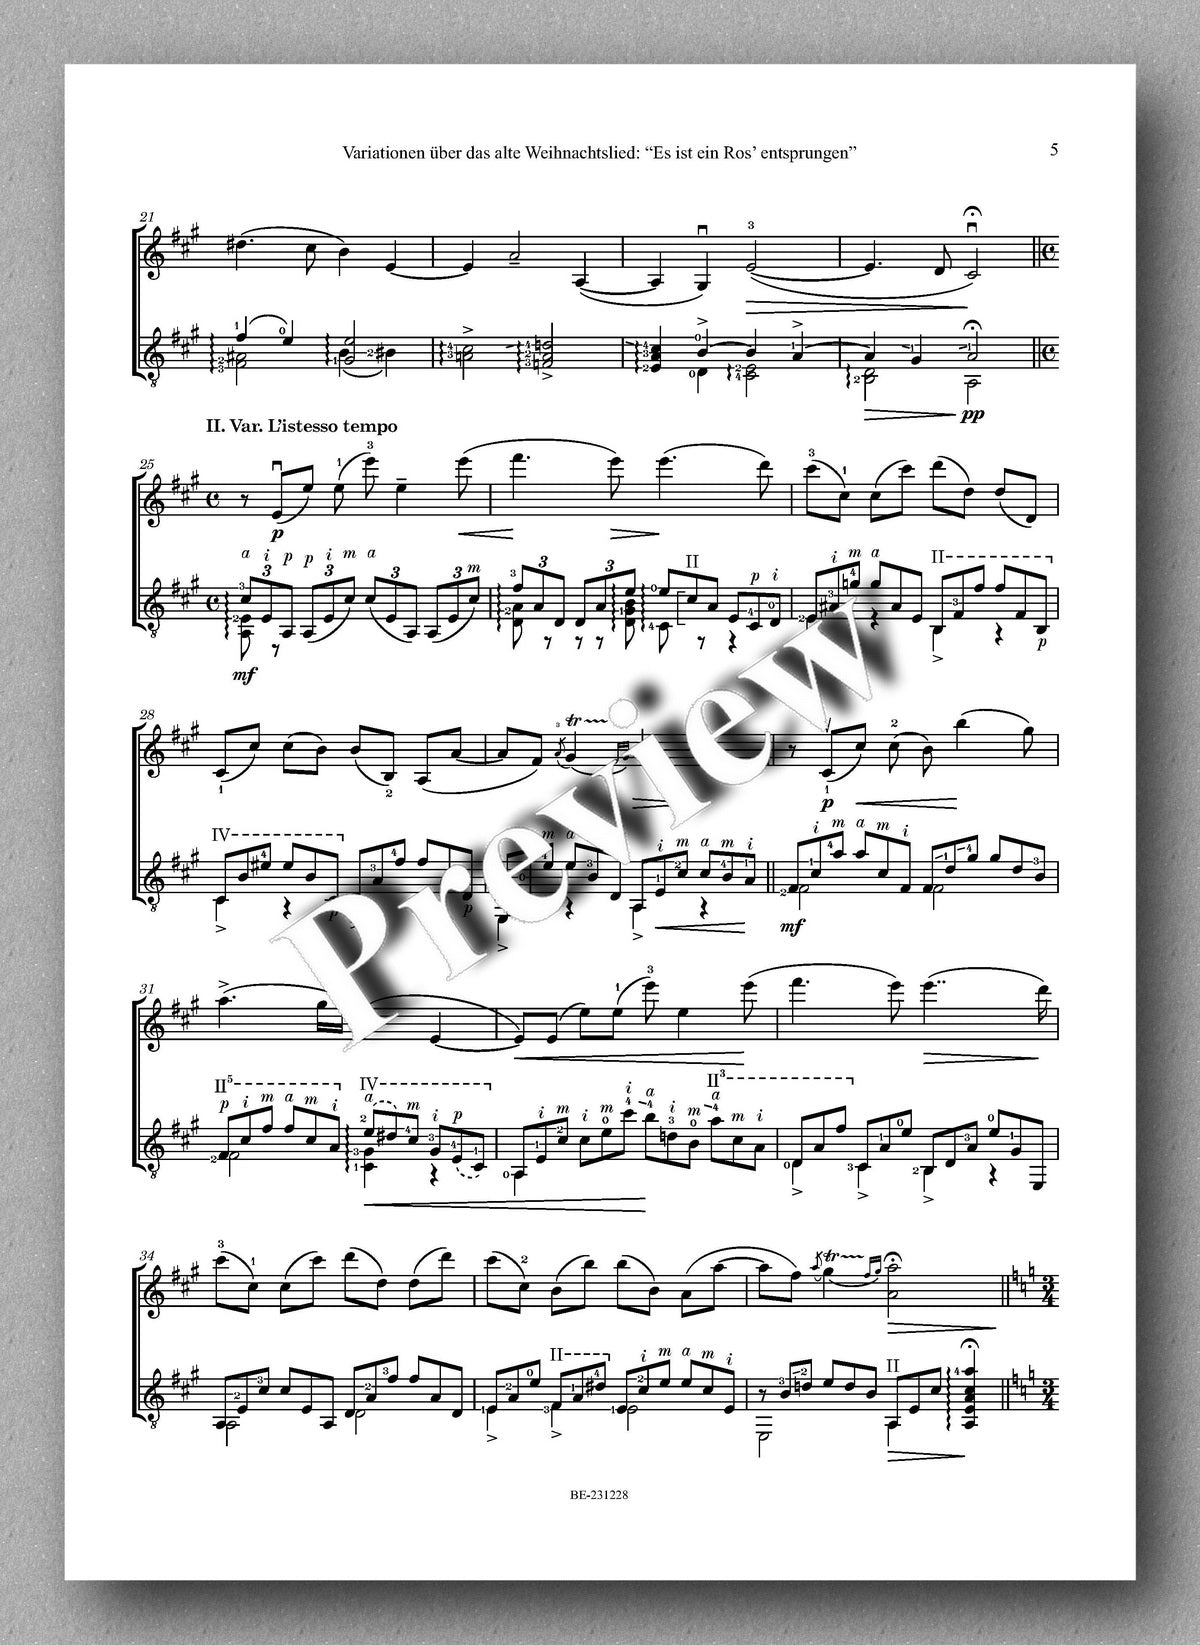 Ferdinand Rebay, Variationen über das alte Weihnachtslied: “Es ist ein Ros’ entsprungen” - preview of the music score 2